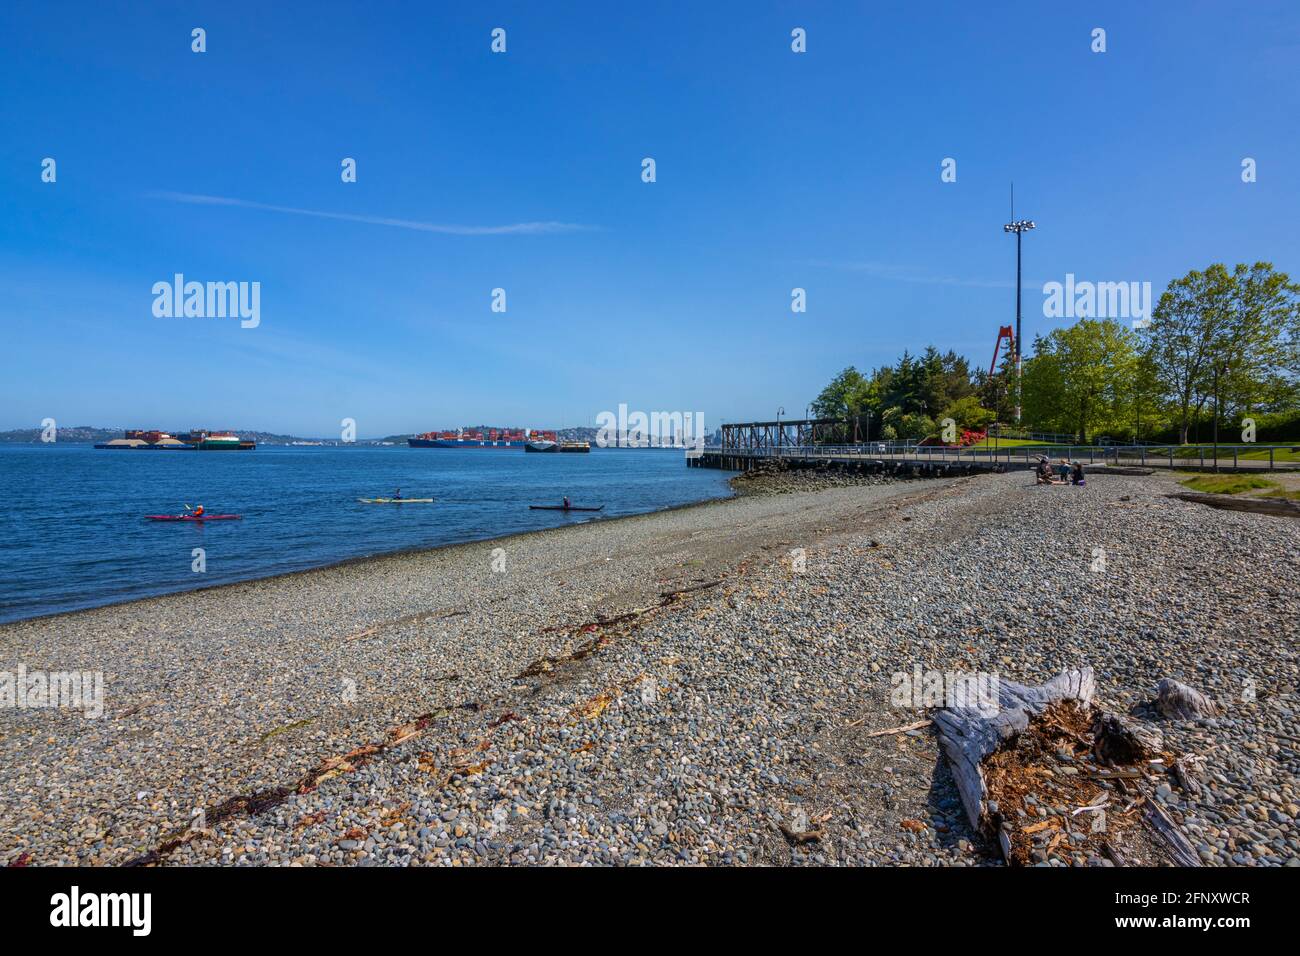 Kyakers erkunden die Elliott Bay in diesem Bild mit der virtischen Stadtlandschaft von Seattle, Washington. USA. 2021. Stockfoto